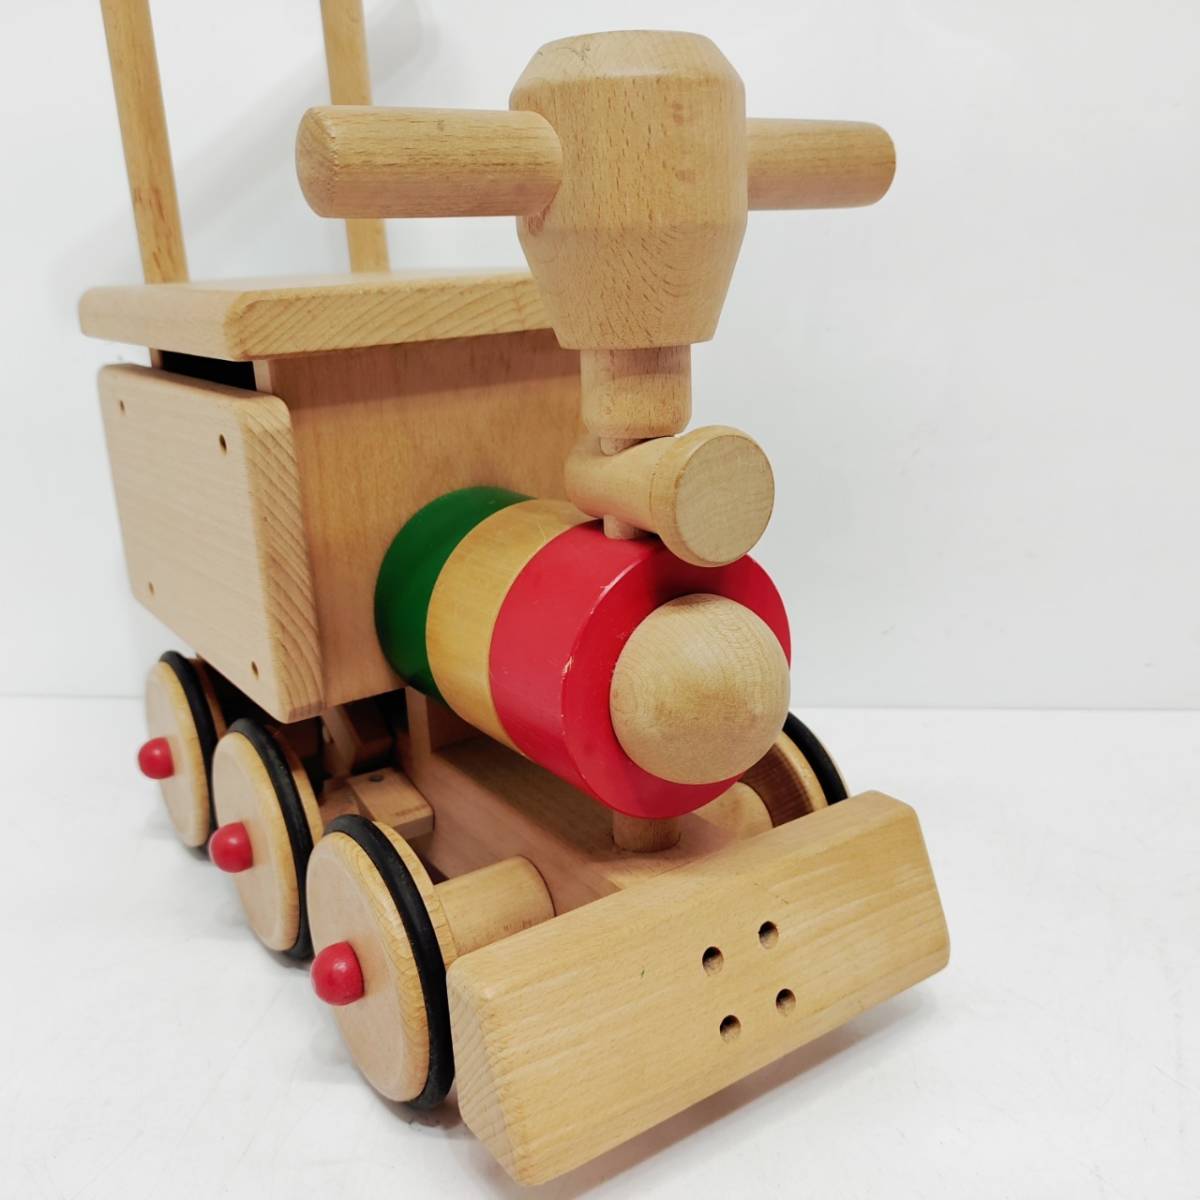 ●汽笛のなる汽車 木製 乗用玩具 木のおもちゃ キッズ 幼児 知育玩具 電車 列車 こども L884_画像3